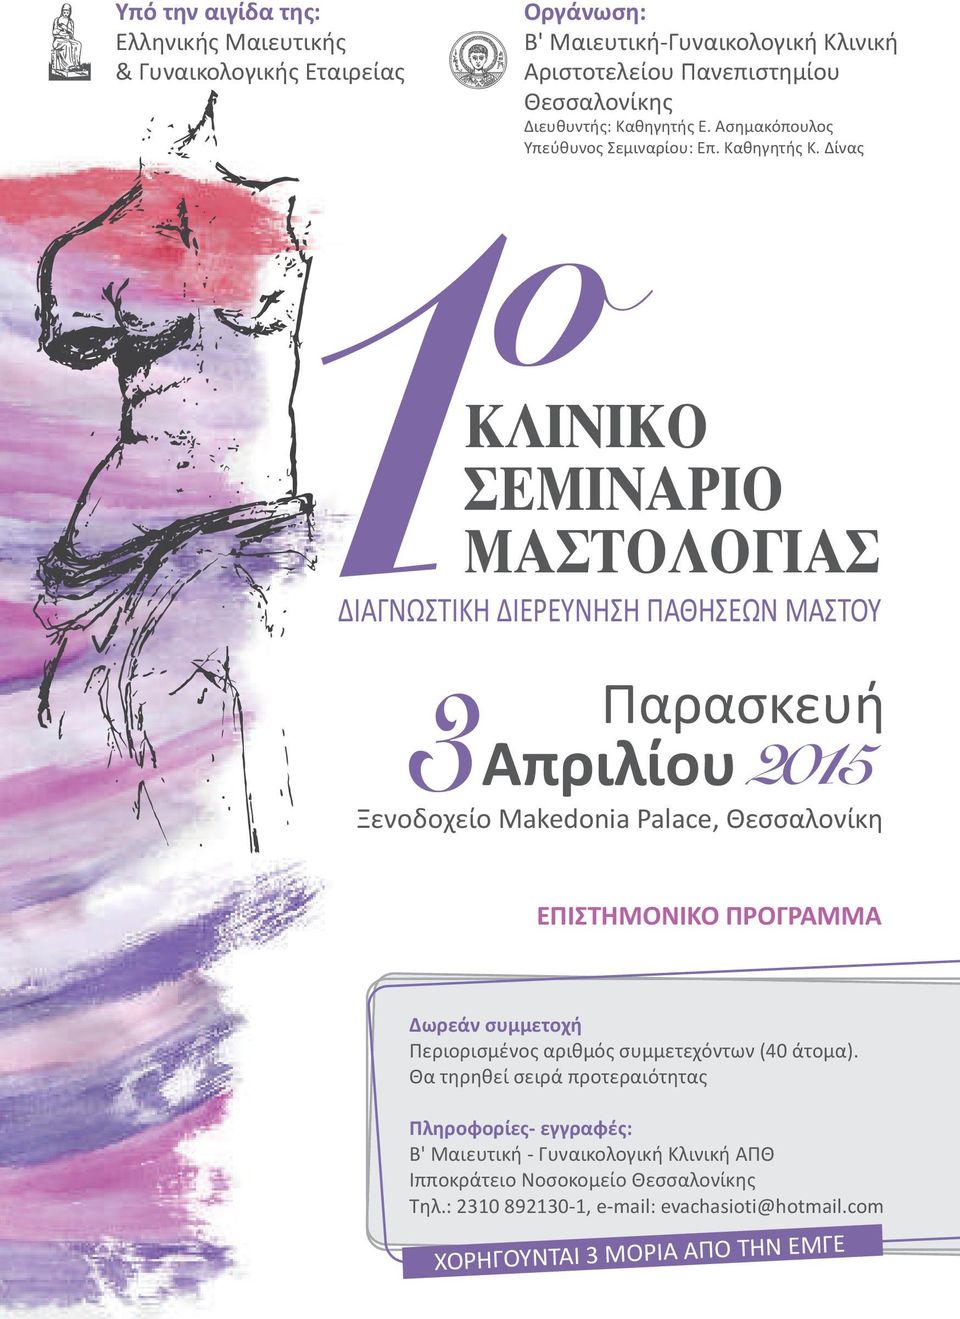 Δίνας 3 2015 Παρασκευή Απριλίου Ξενοδοχείο Makedonia Palace, Θεσσαλονίκη ΕΠΙΣΤΗΜΟΝΙΚΟ ΠΡΟΓΡΑΜΜΑ Δωρεάν συμμετοχή Περιορισμένος αριθμός συμμετεχόντων (40 άτομα).